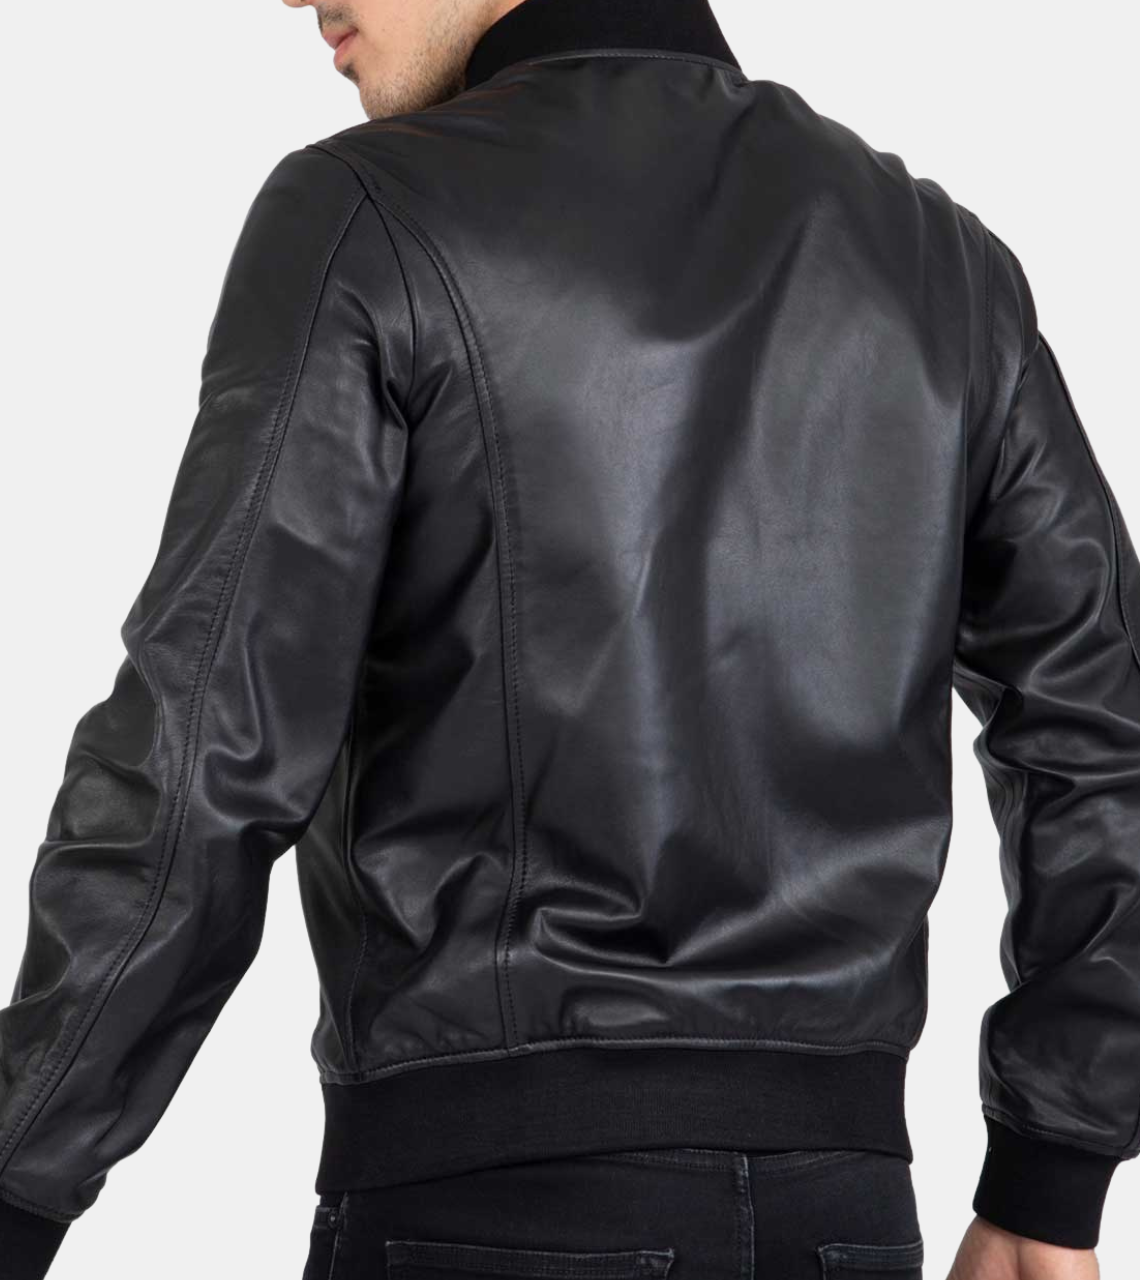 Amoret Men's Black Bomber Leather Jacket Back